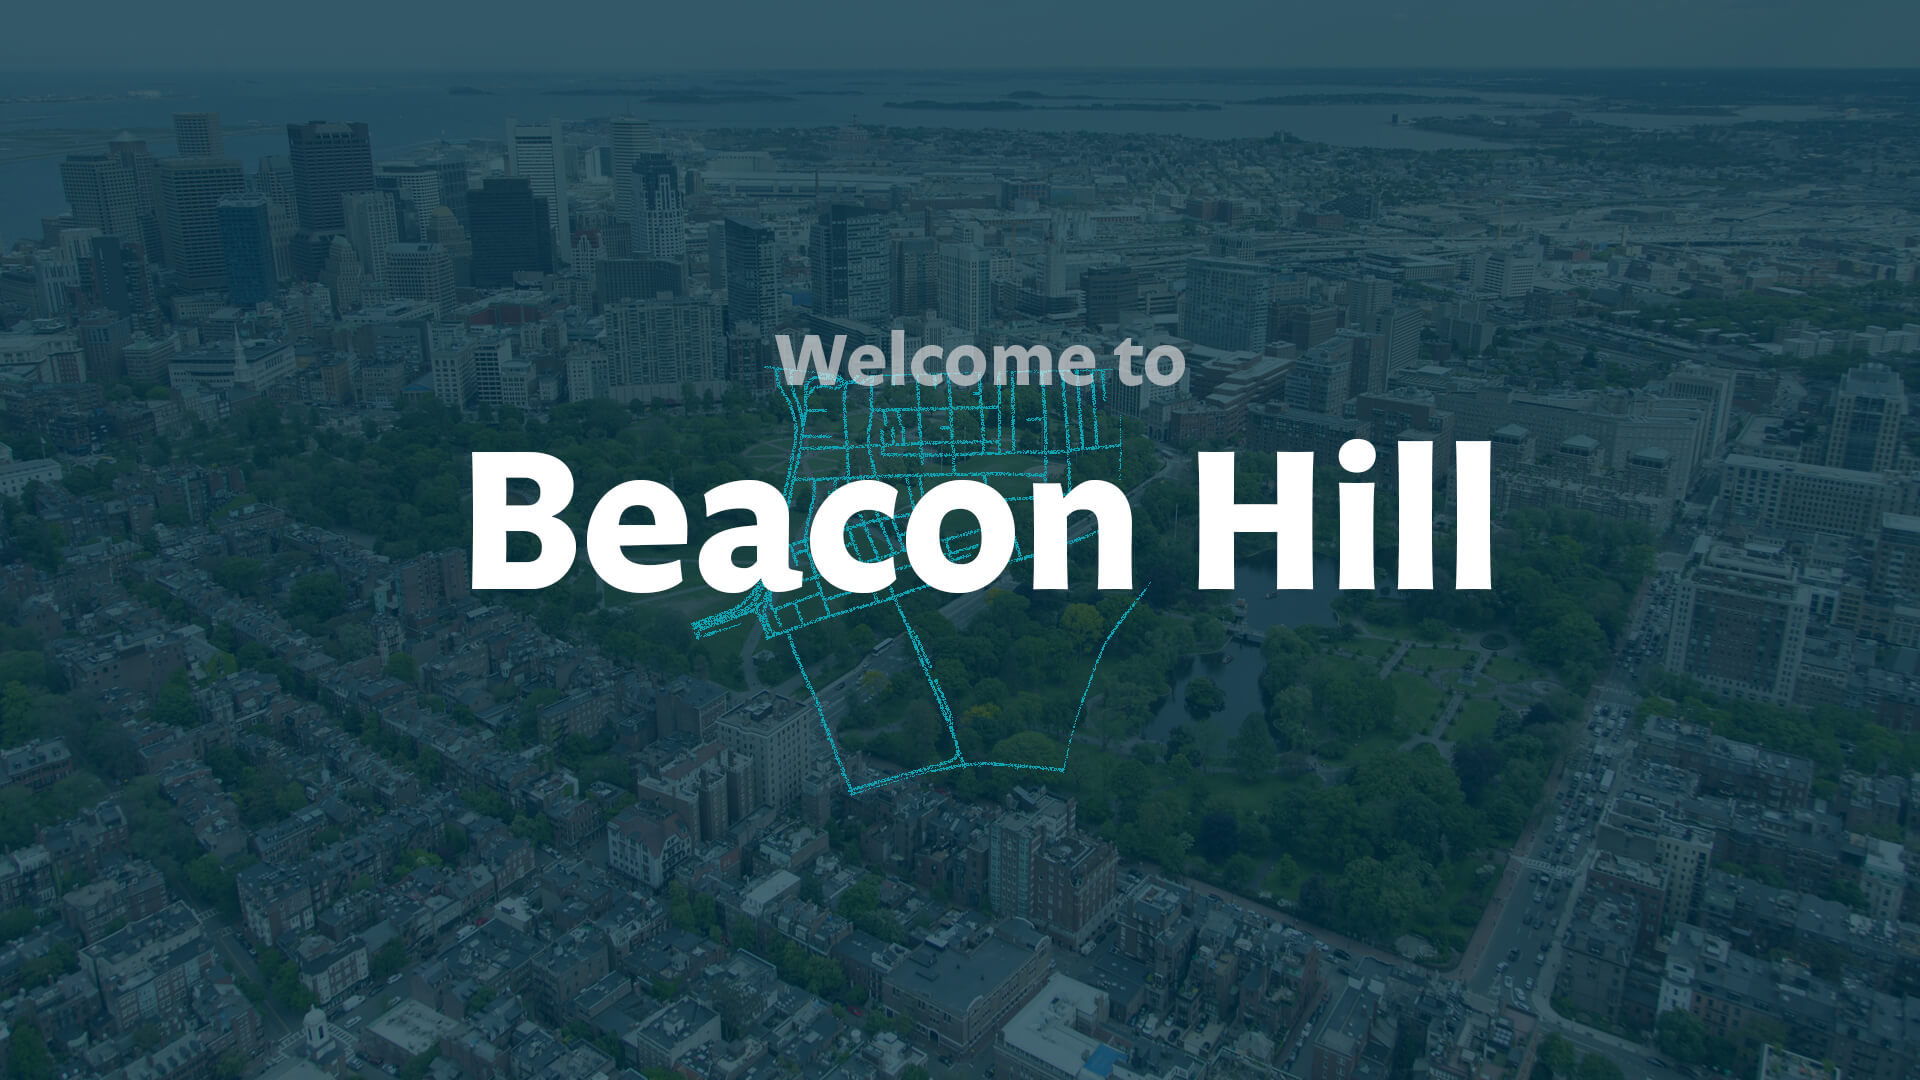 About Boston's Beacon Hill Neighborhood